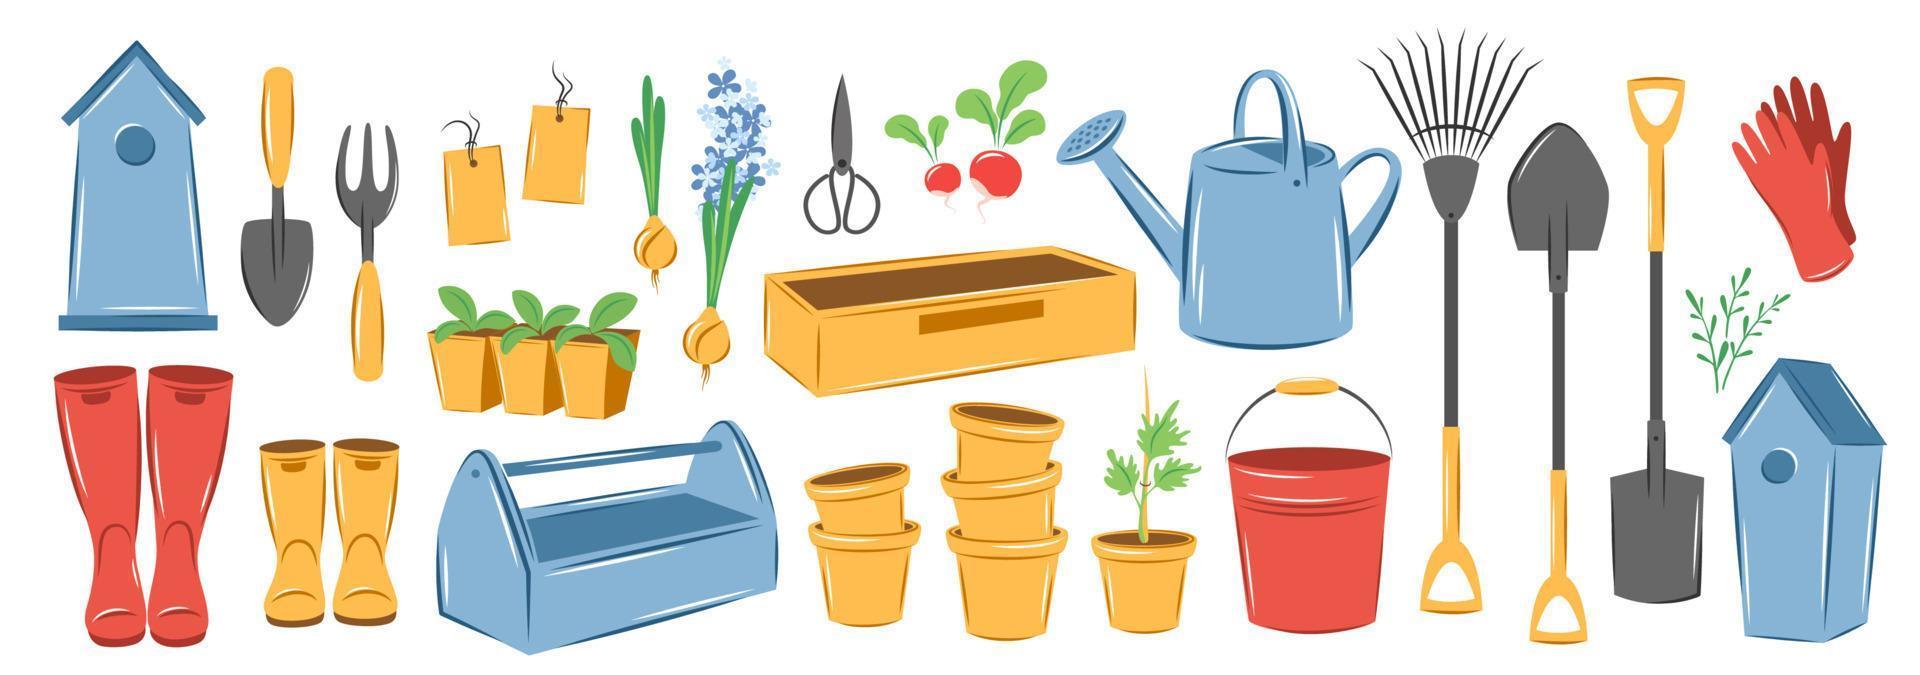 vår trädgård element uppsättning. bruka jordbruks verktyg. vektor illustration.